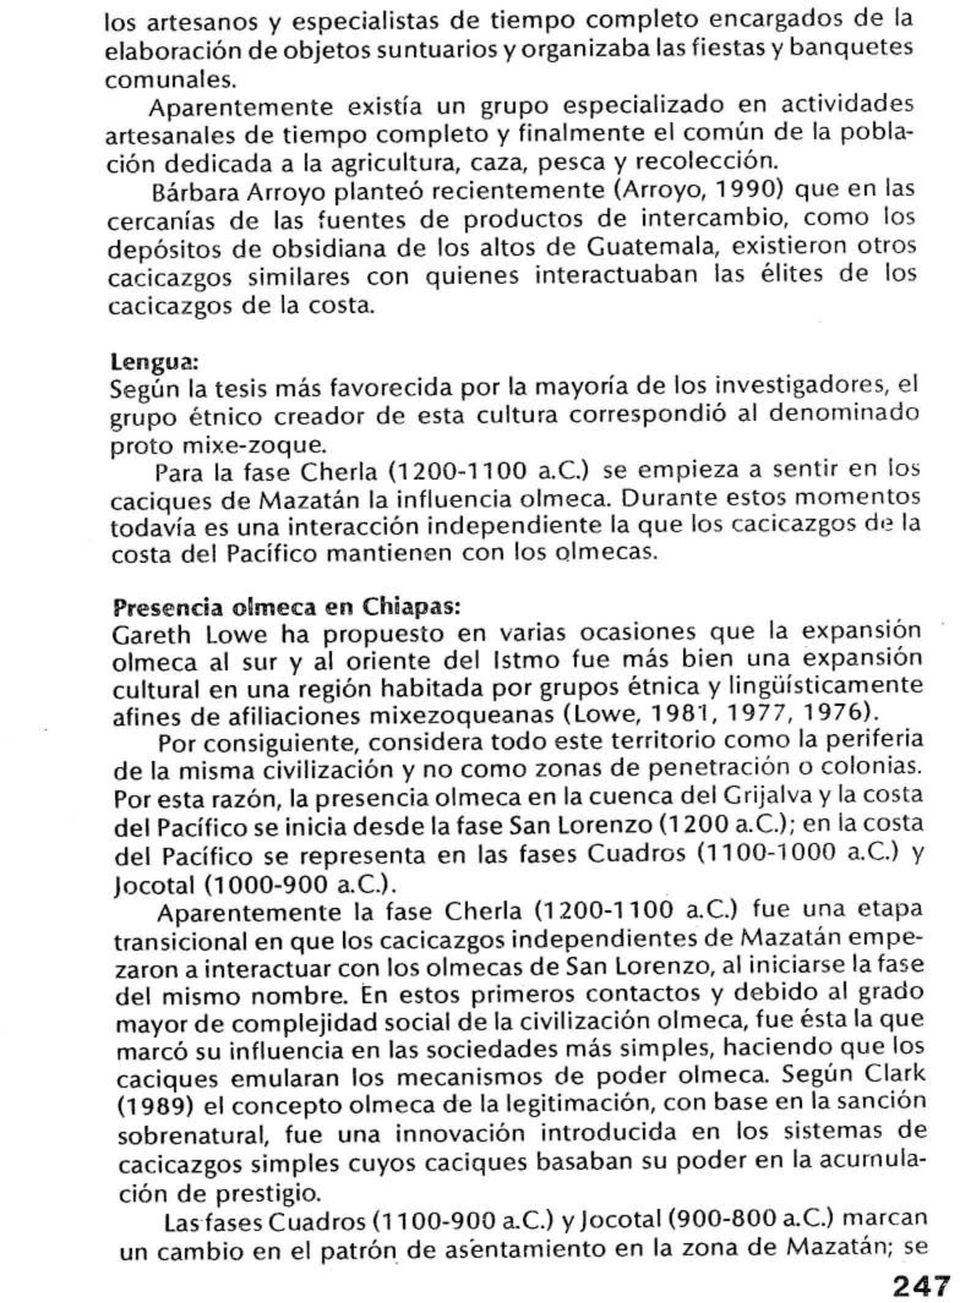 Bárbara Arroyo planteó recientemente (Arroyo, 1990) que en las cercanías de las fuentes de productos de intercambio, como los depósitos de obsidiana de los altos de Guatemala, existieron otros